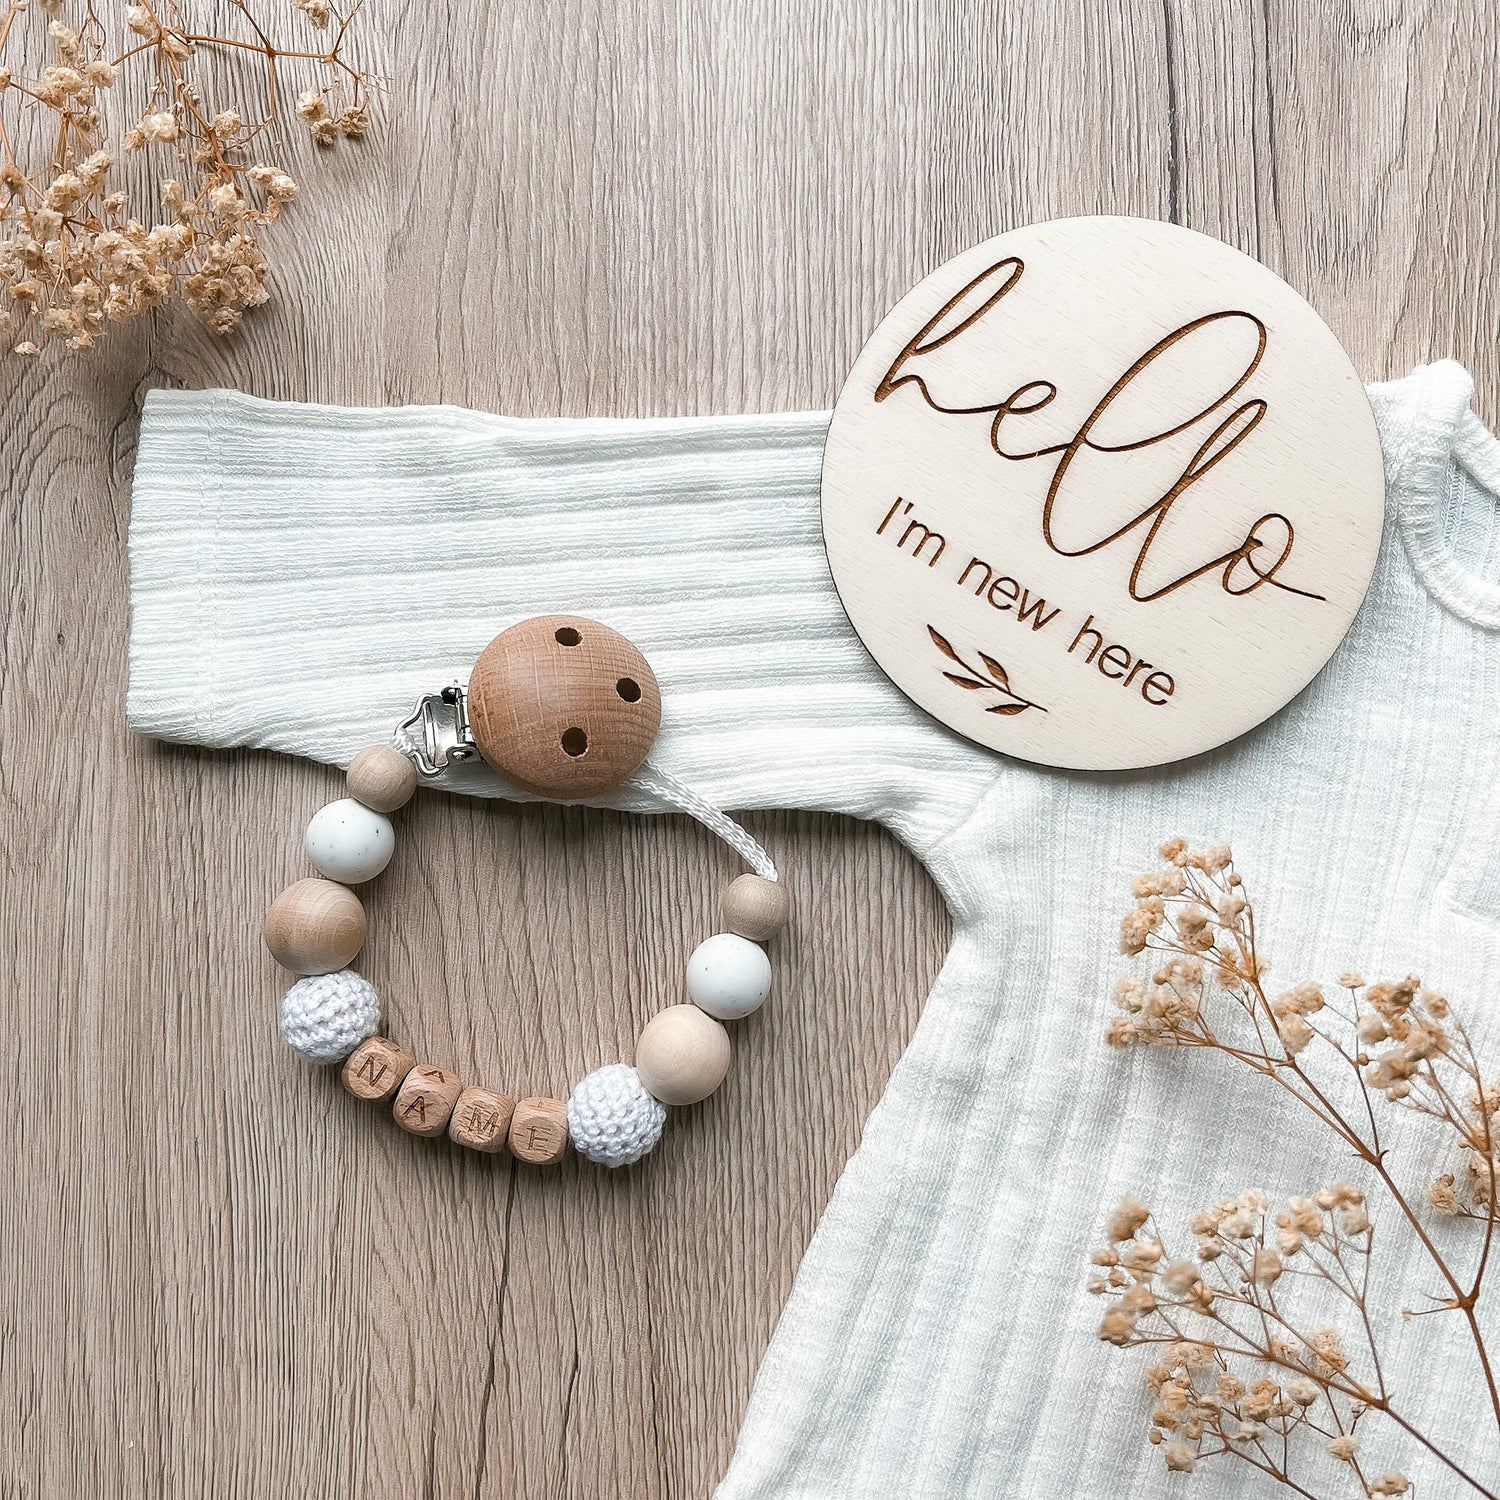 kotenkram onlineshop für handgefertigte babyartikel kategorie schnullerketten nuckelketten babyketten